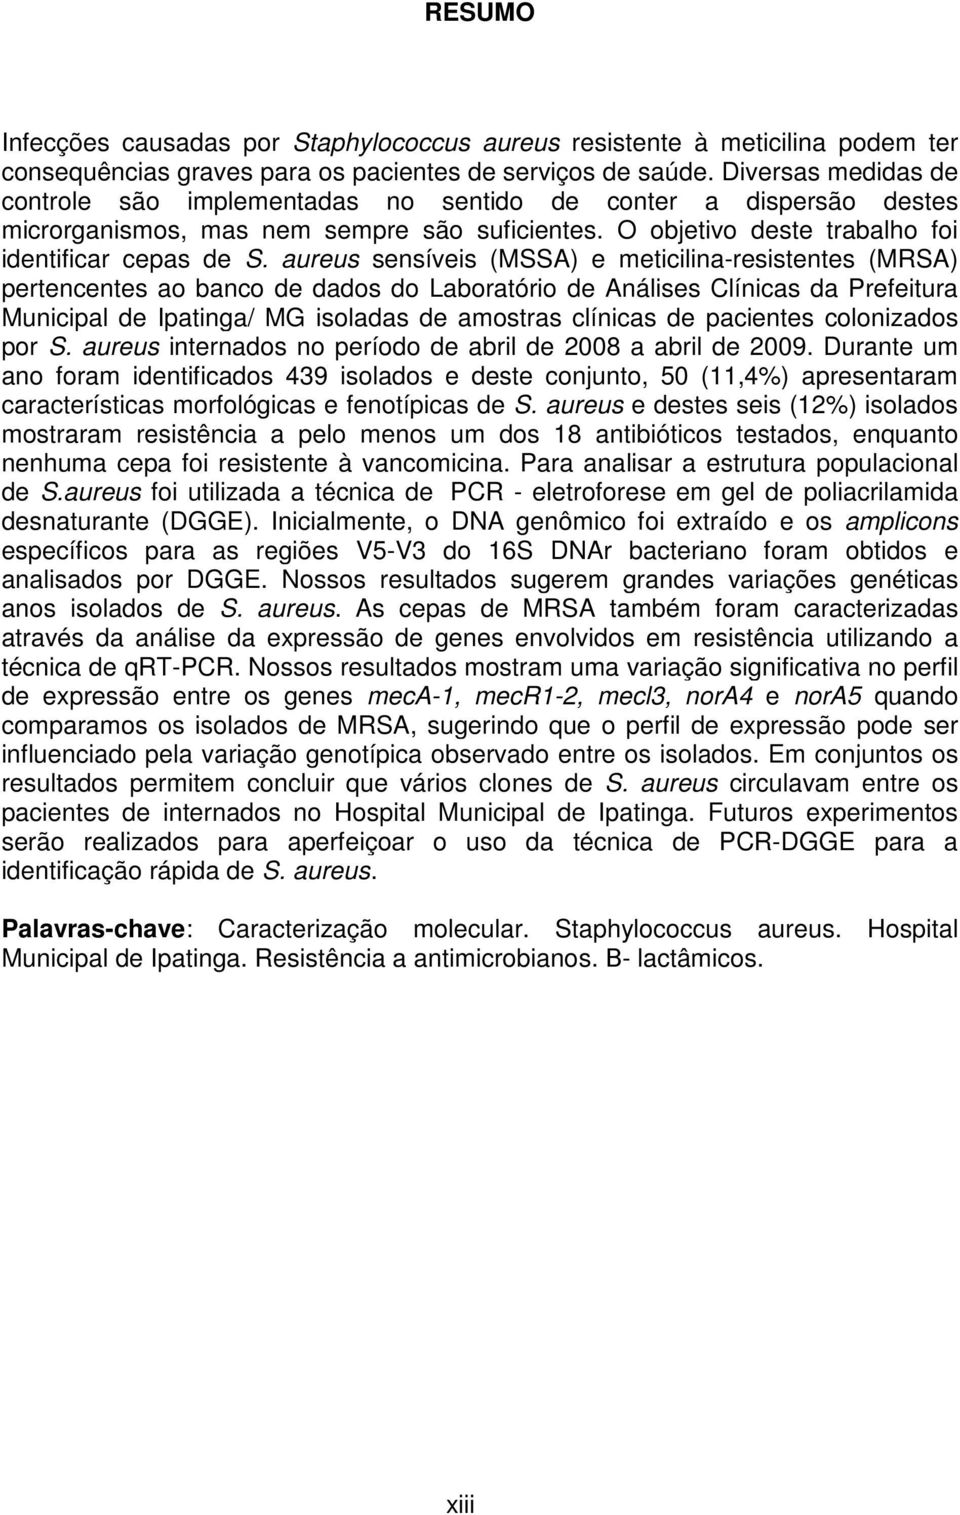 aureus sensíveis (MSSA) e meticilina-resistentes (MRSA) pertencentes ao banco de dados do Laboratório de Análises Clínicas da Prefeitura Municipal de Ipatinga/ MG isoladas de amostras clínicas de